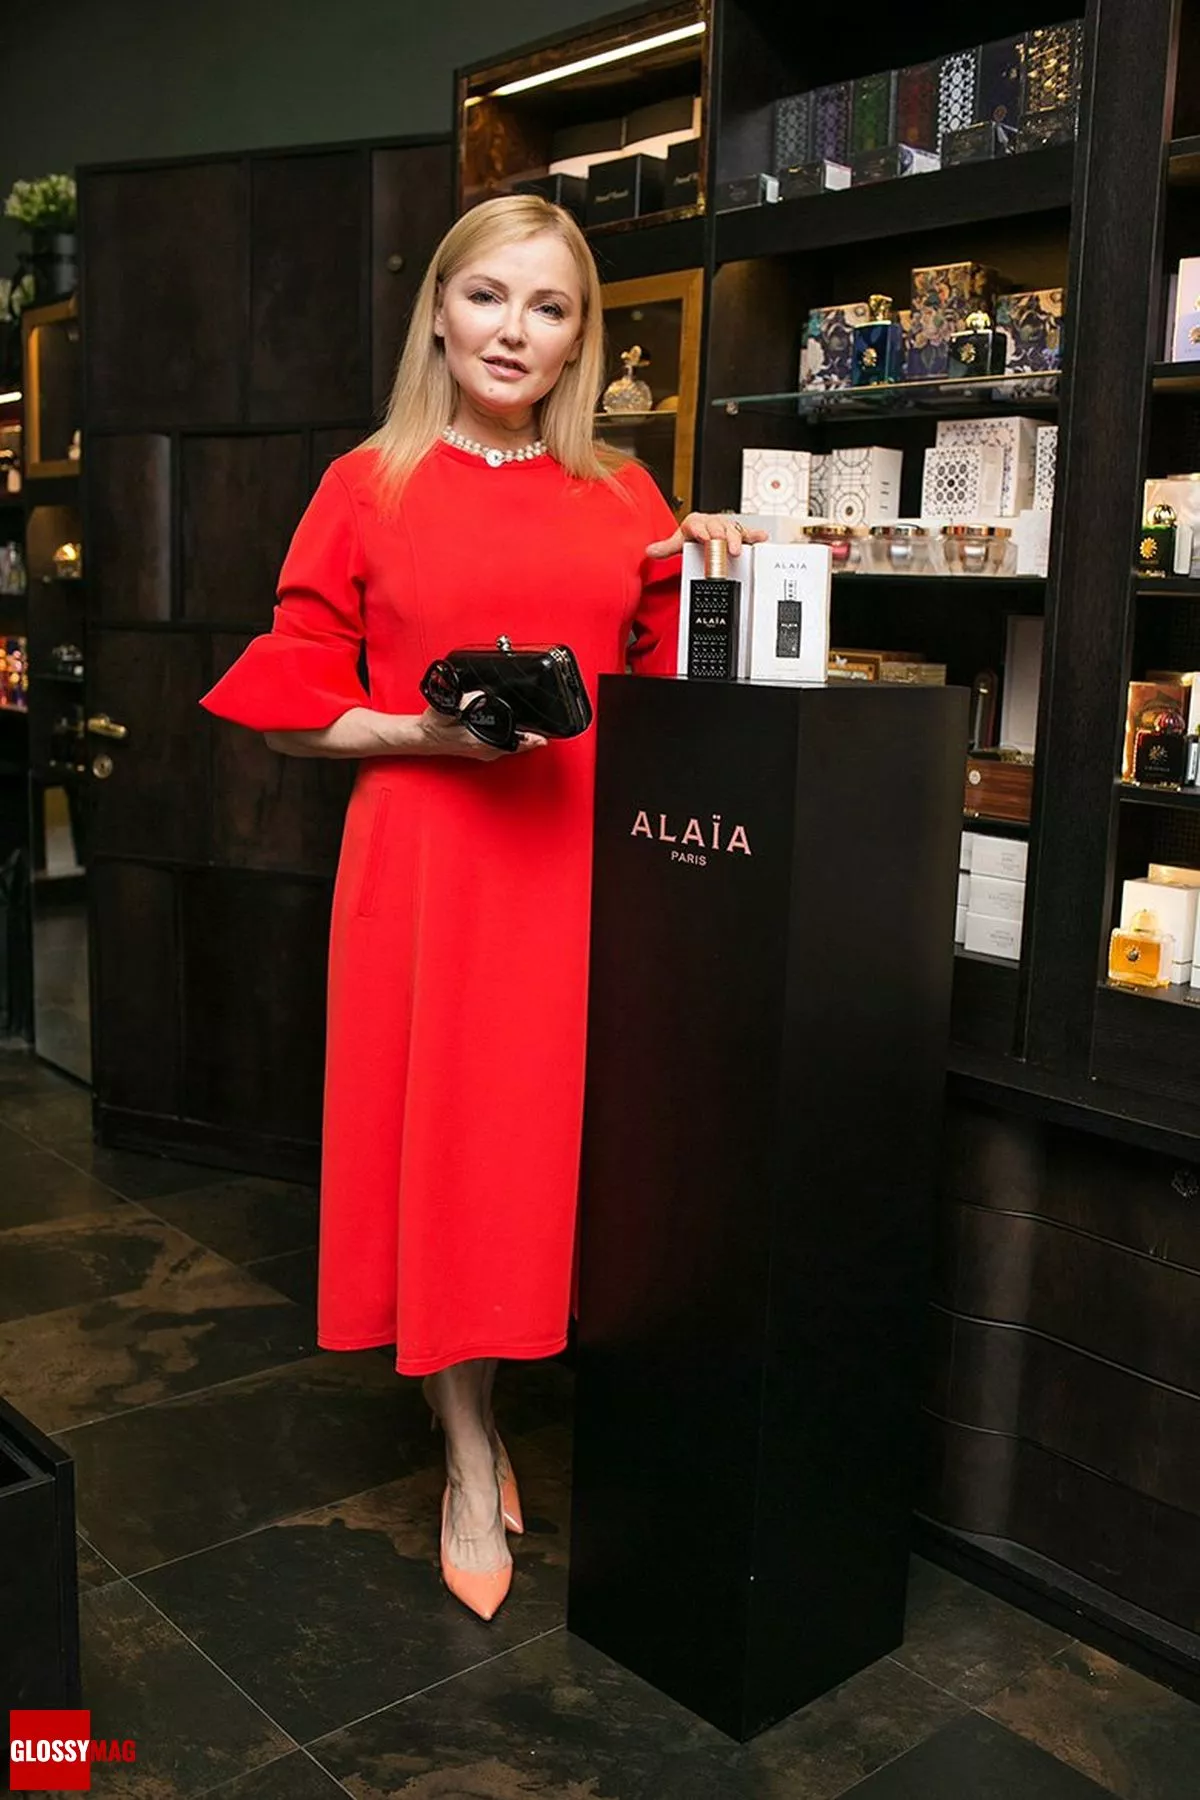 Лариса Вербицкая в корнере Аlaïa Paris на закрытом мероприятии Beauty CHOICE в Rivoli Perfumery в ТГ Модный сезон, 28 июня 2017 г.